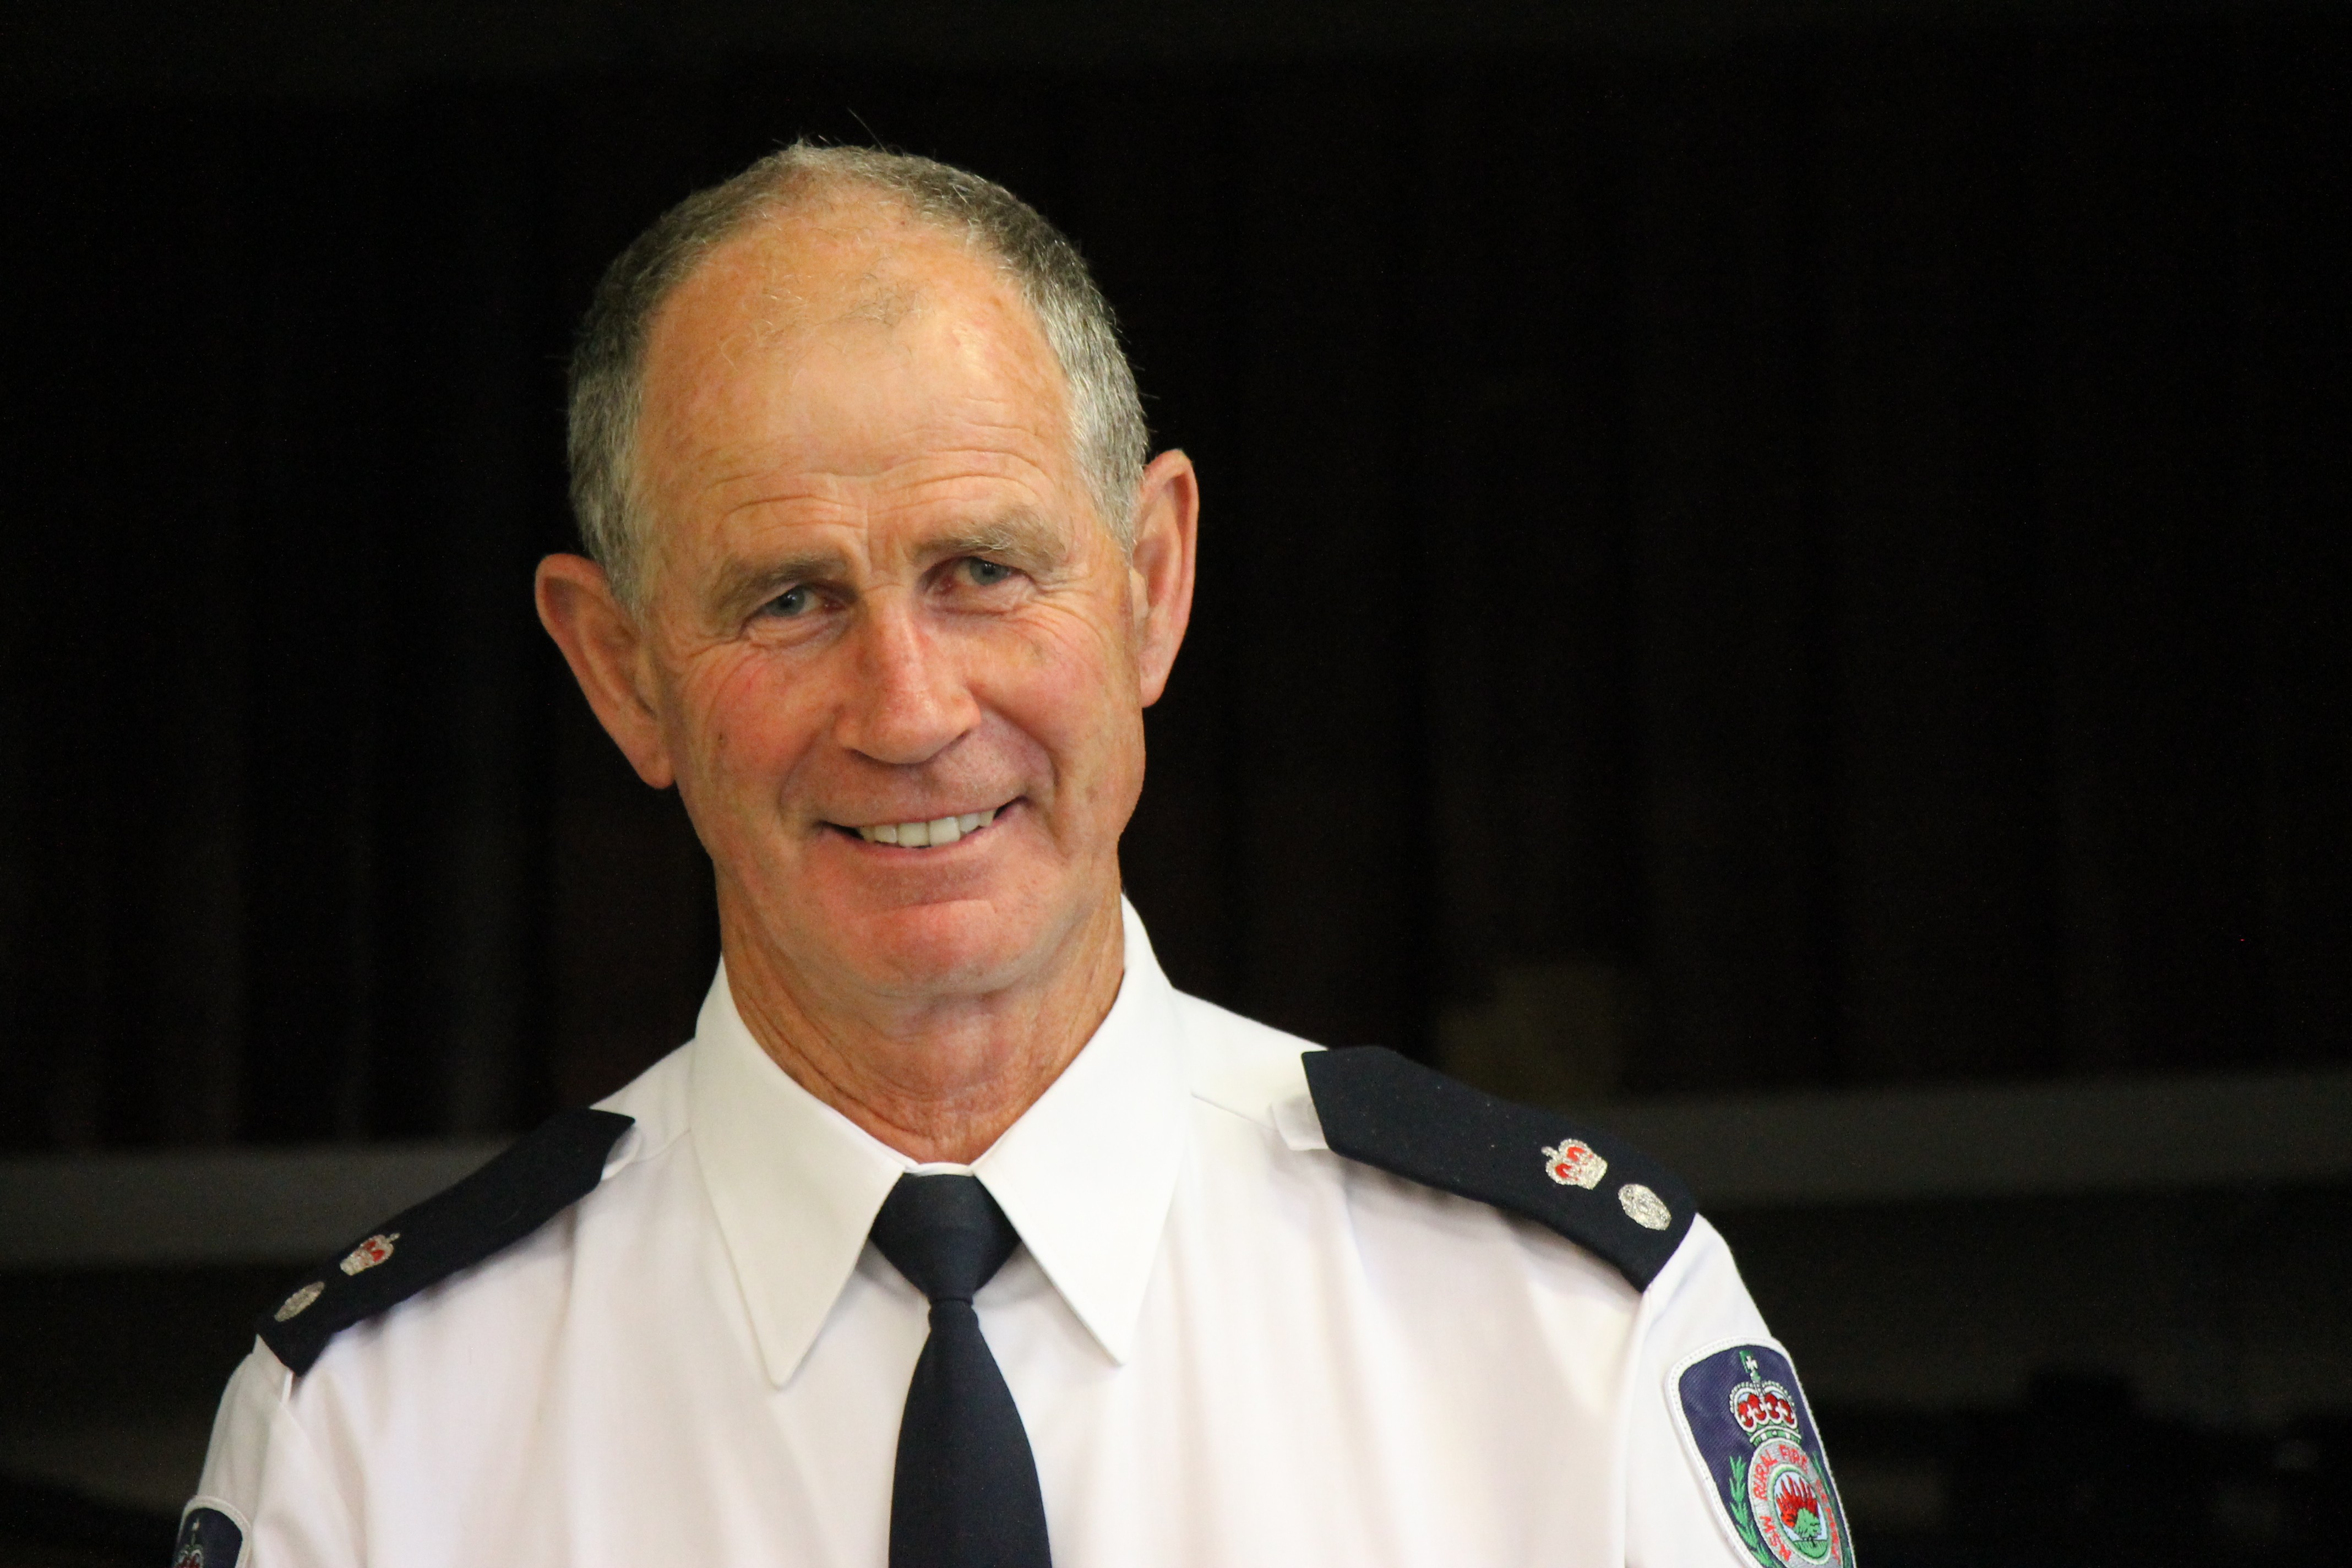 Firefighter boss John Cullen among Bega Valley Shire's top citizens